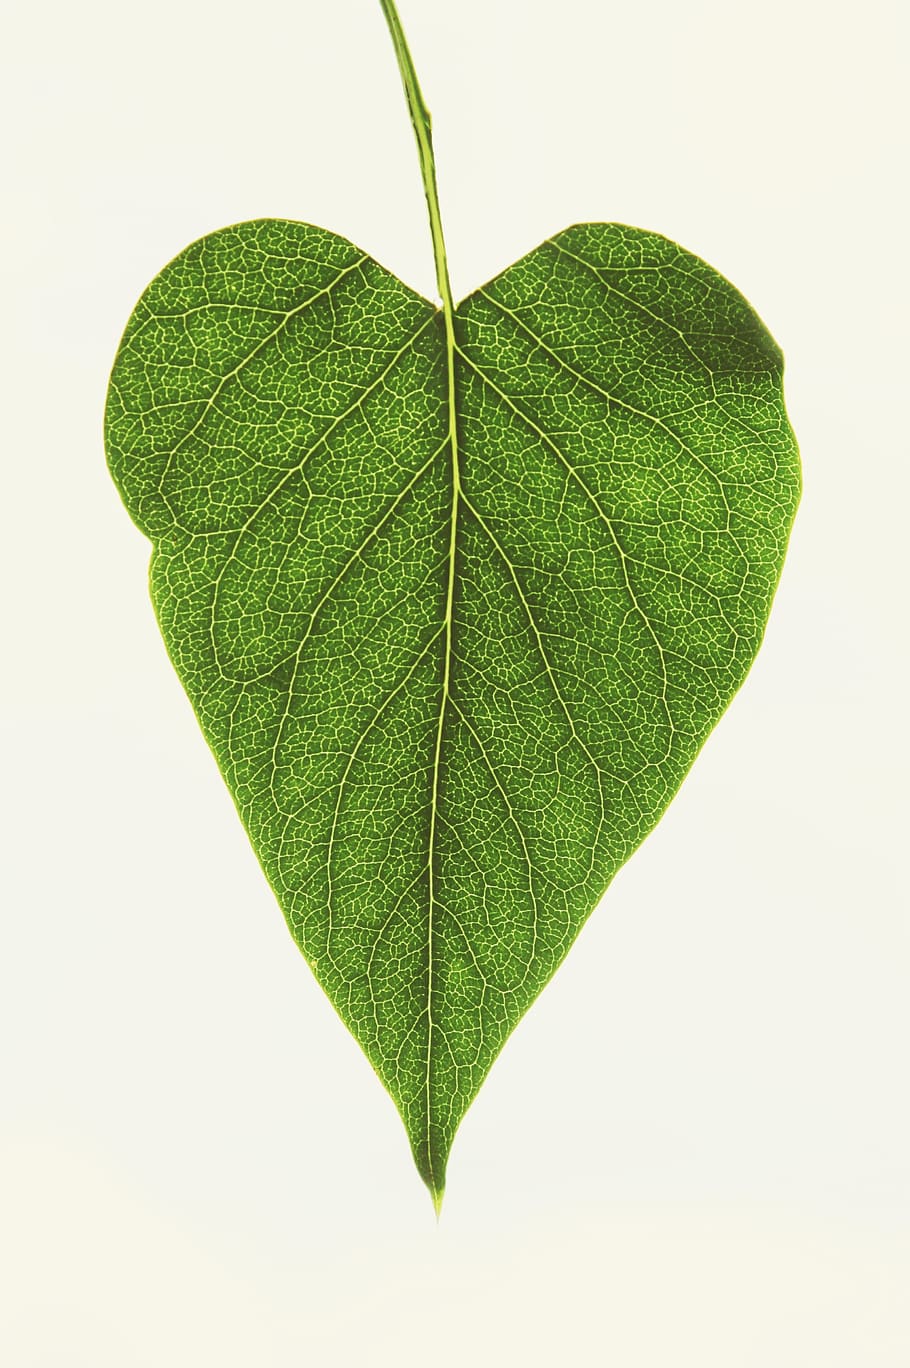 daun, jantung, cinta, alam, tanaman, taman, vena, hijau, bersinar melalui, simbol